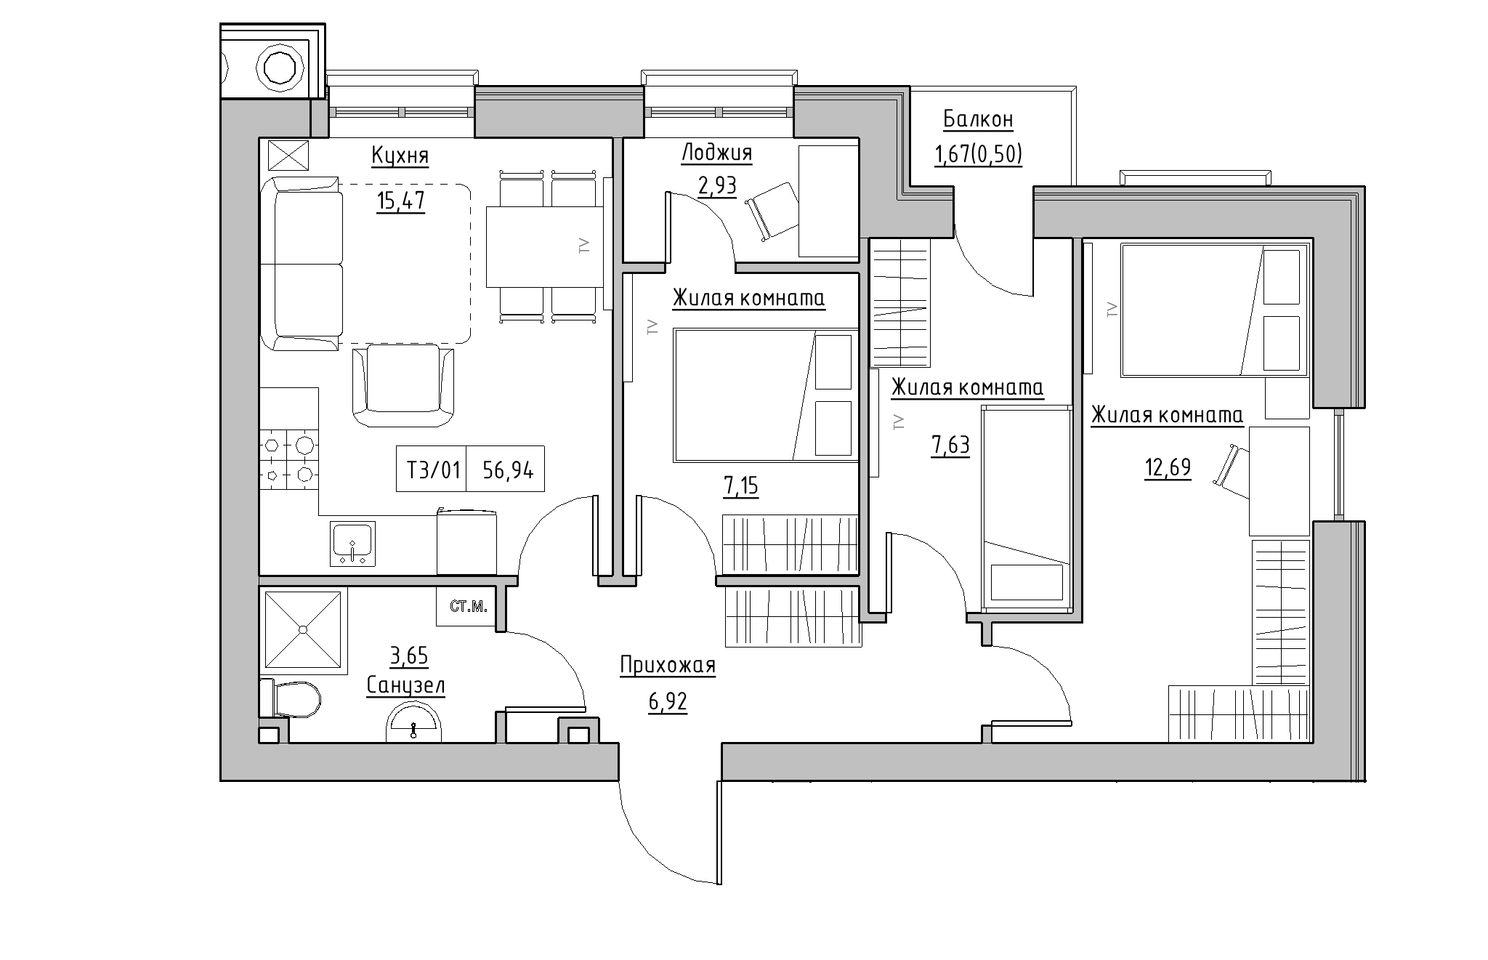 Планування 3-к квартира площею 56.94м2, KS-010-04/0008.